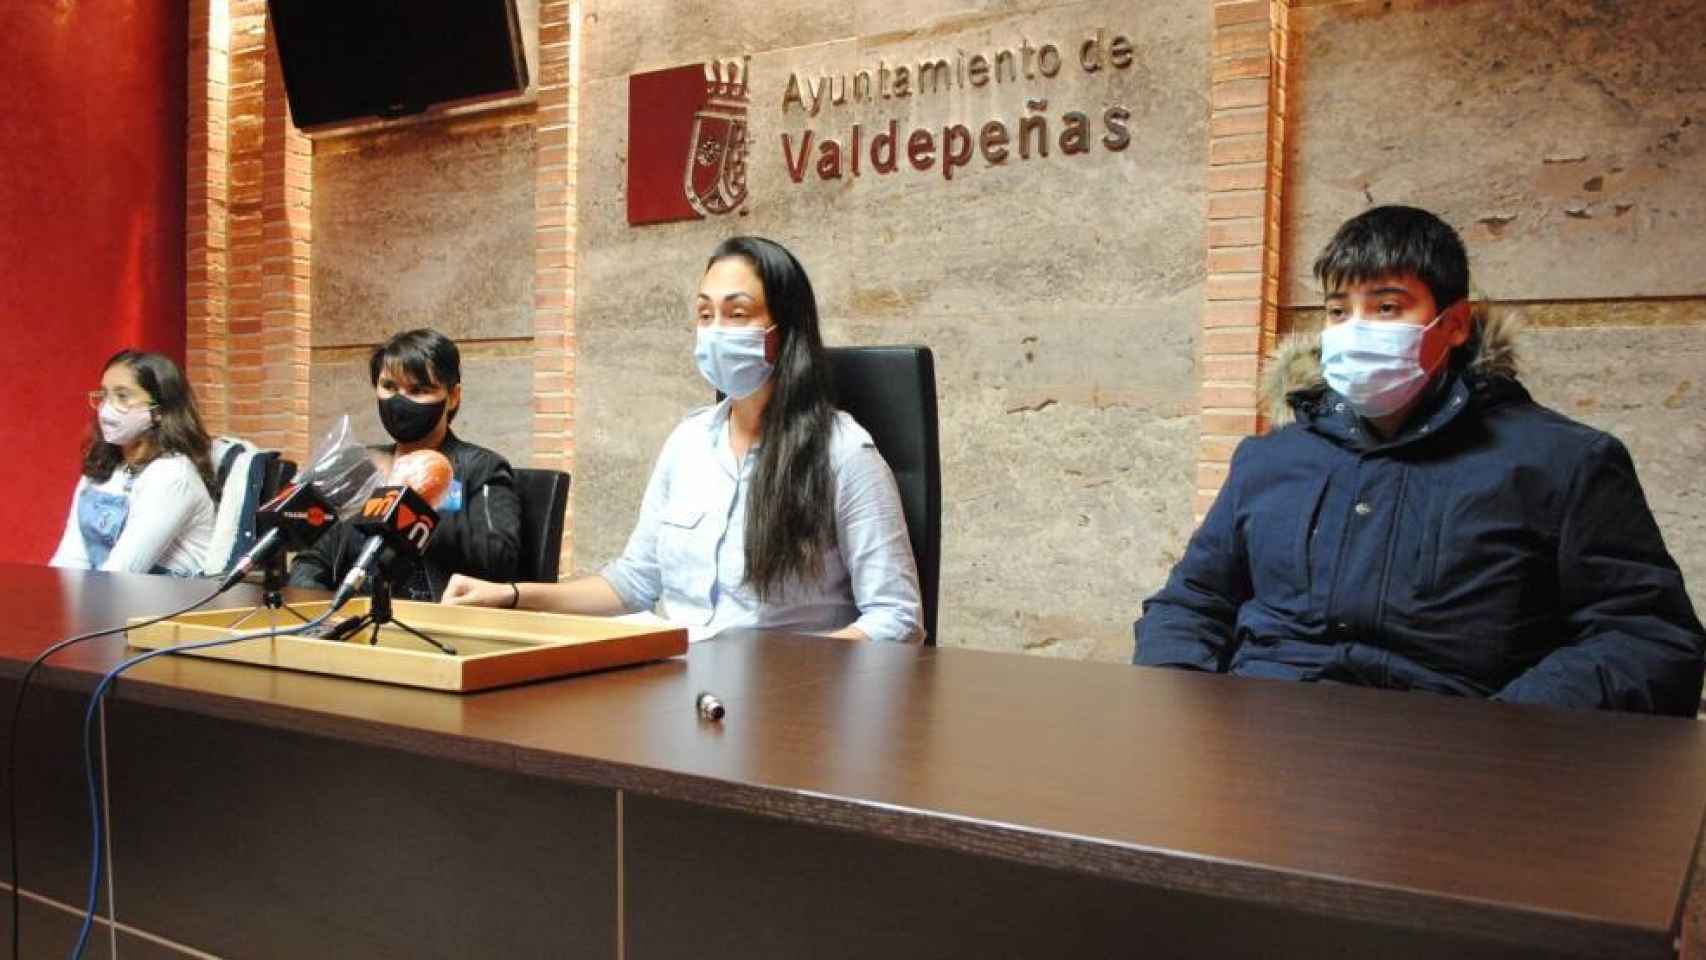 El plan ha sido presentado en el ayuntamiento de Valdepeñas